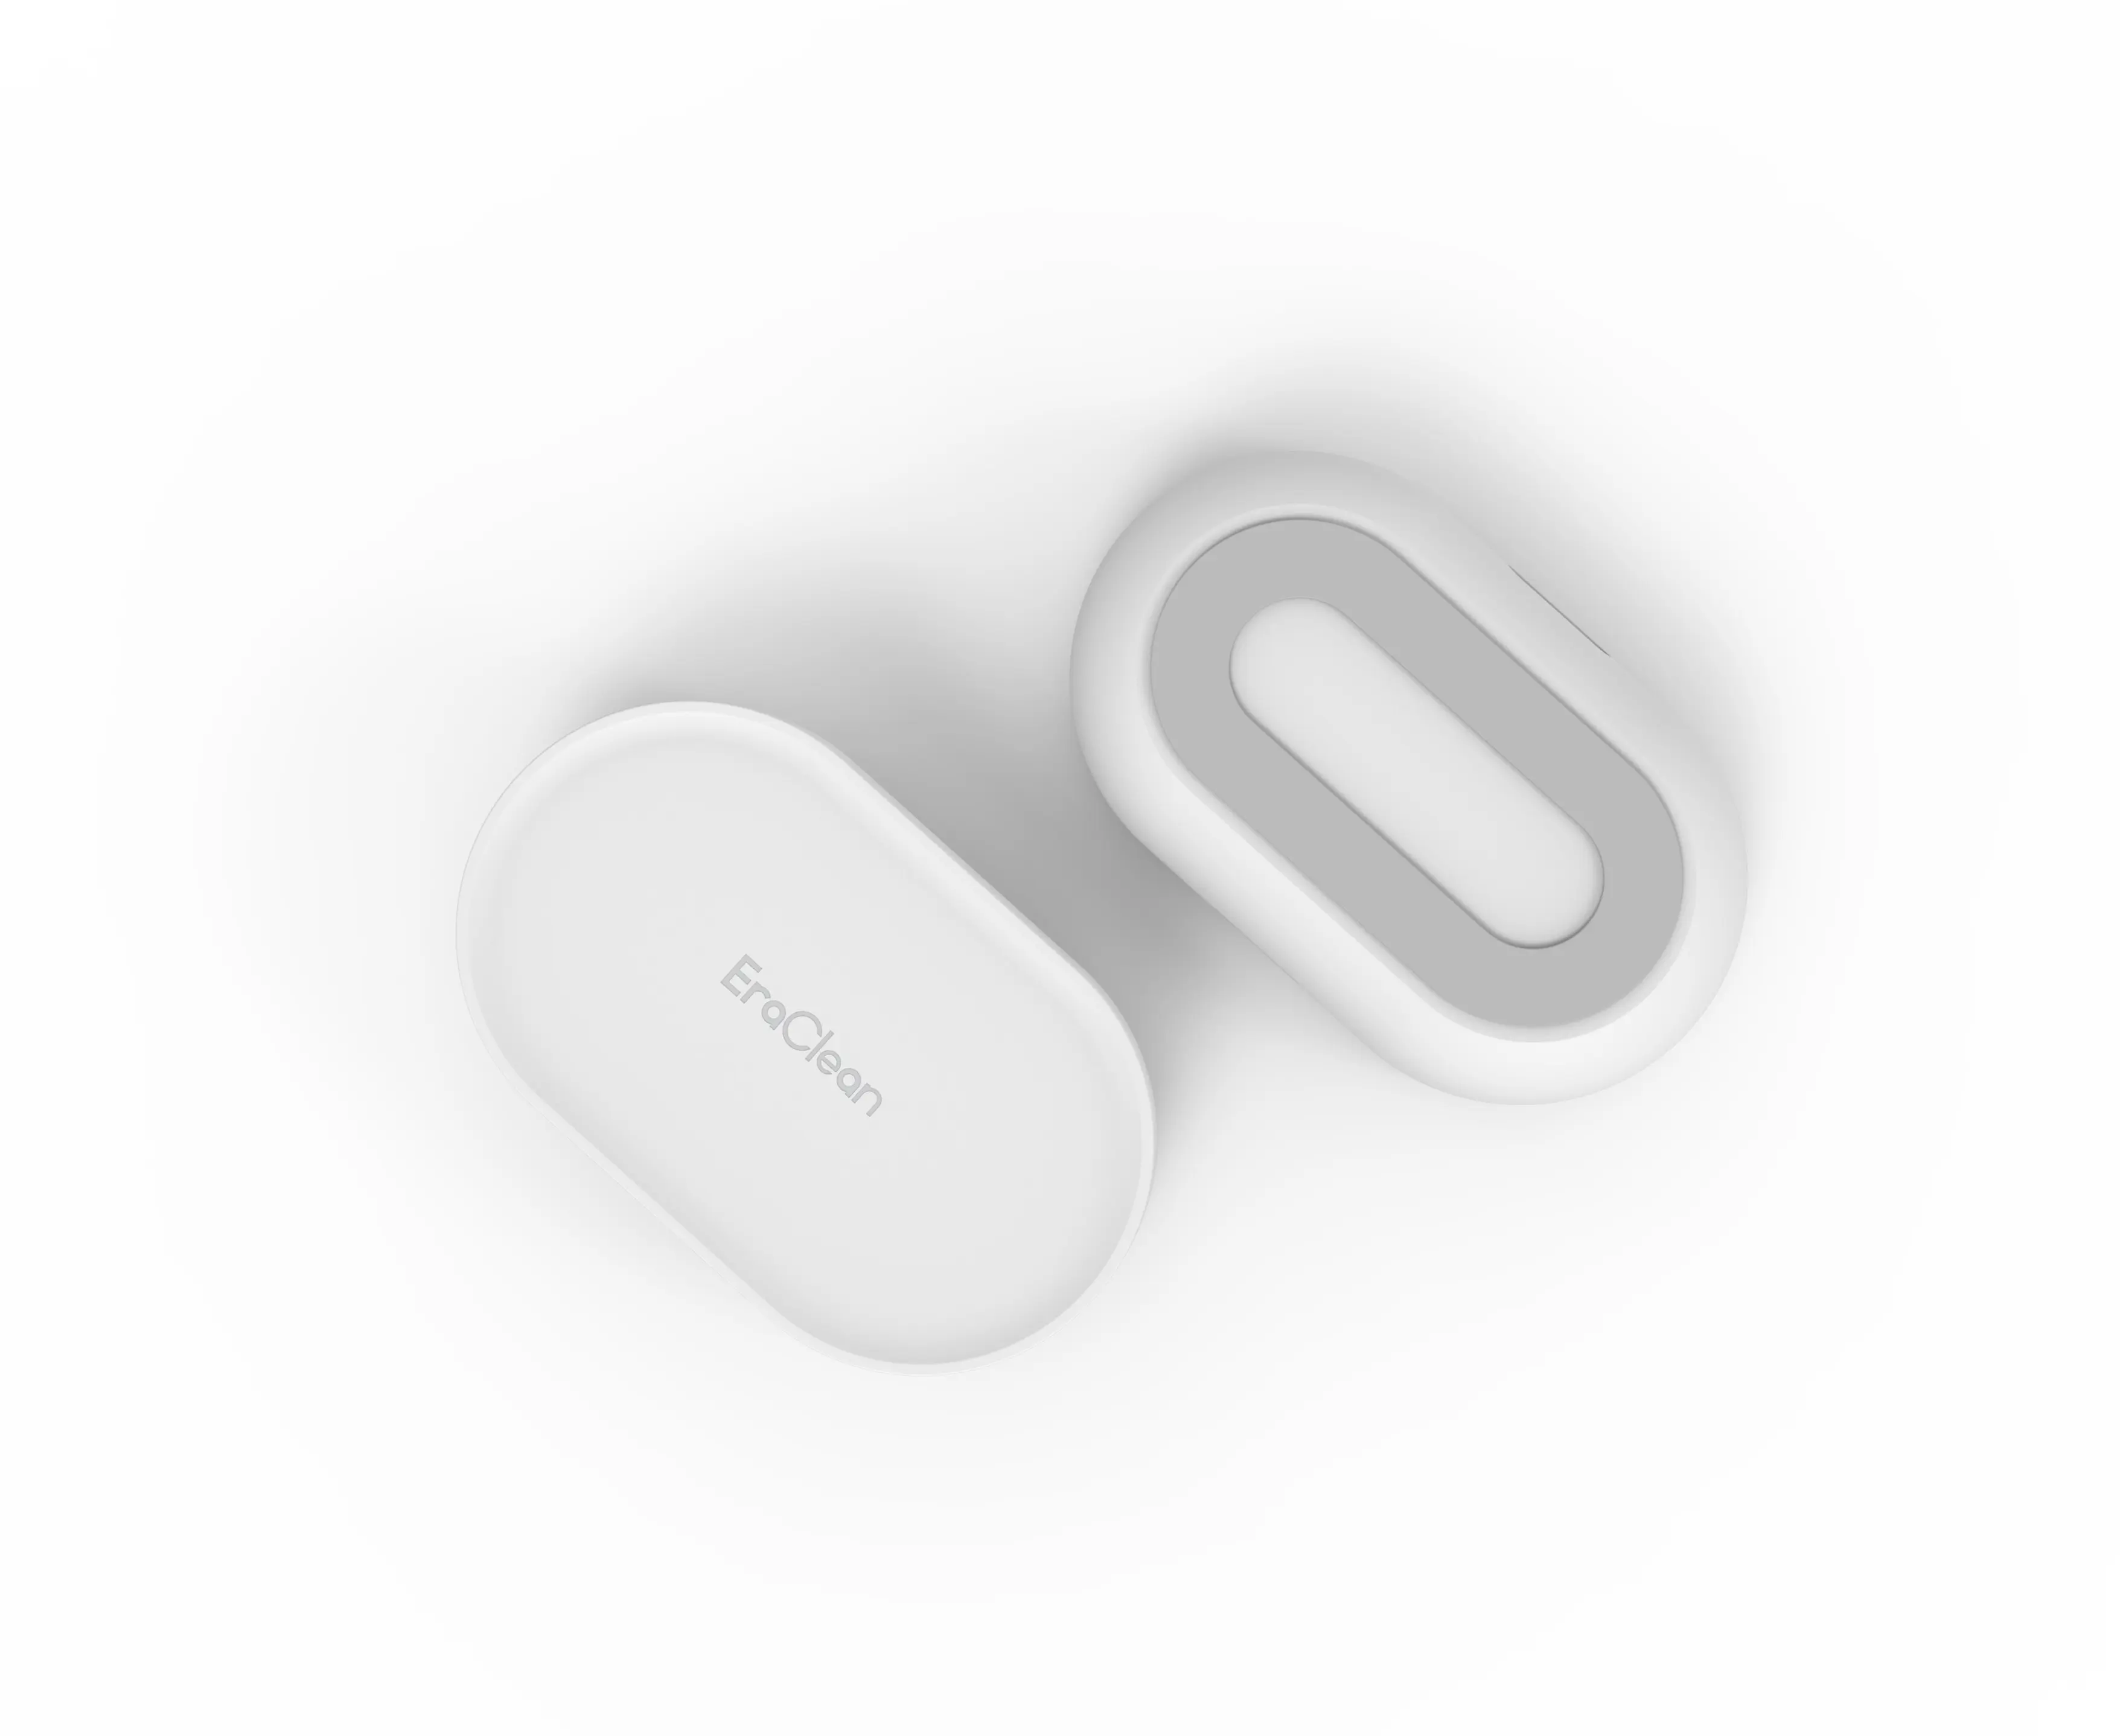 USB şarj aleti ultrasonik kontakt Lens temizleyici küçük taşınabilir günlük bakım temizleyici kontakt Lens temizleyici